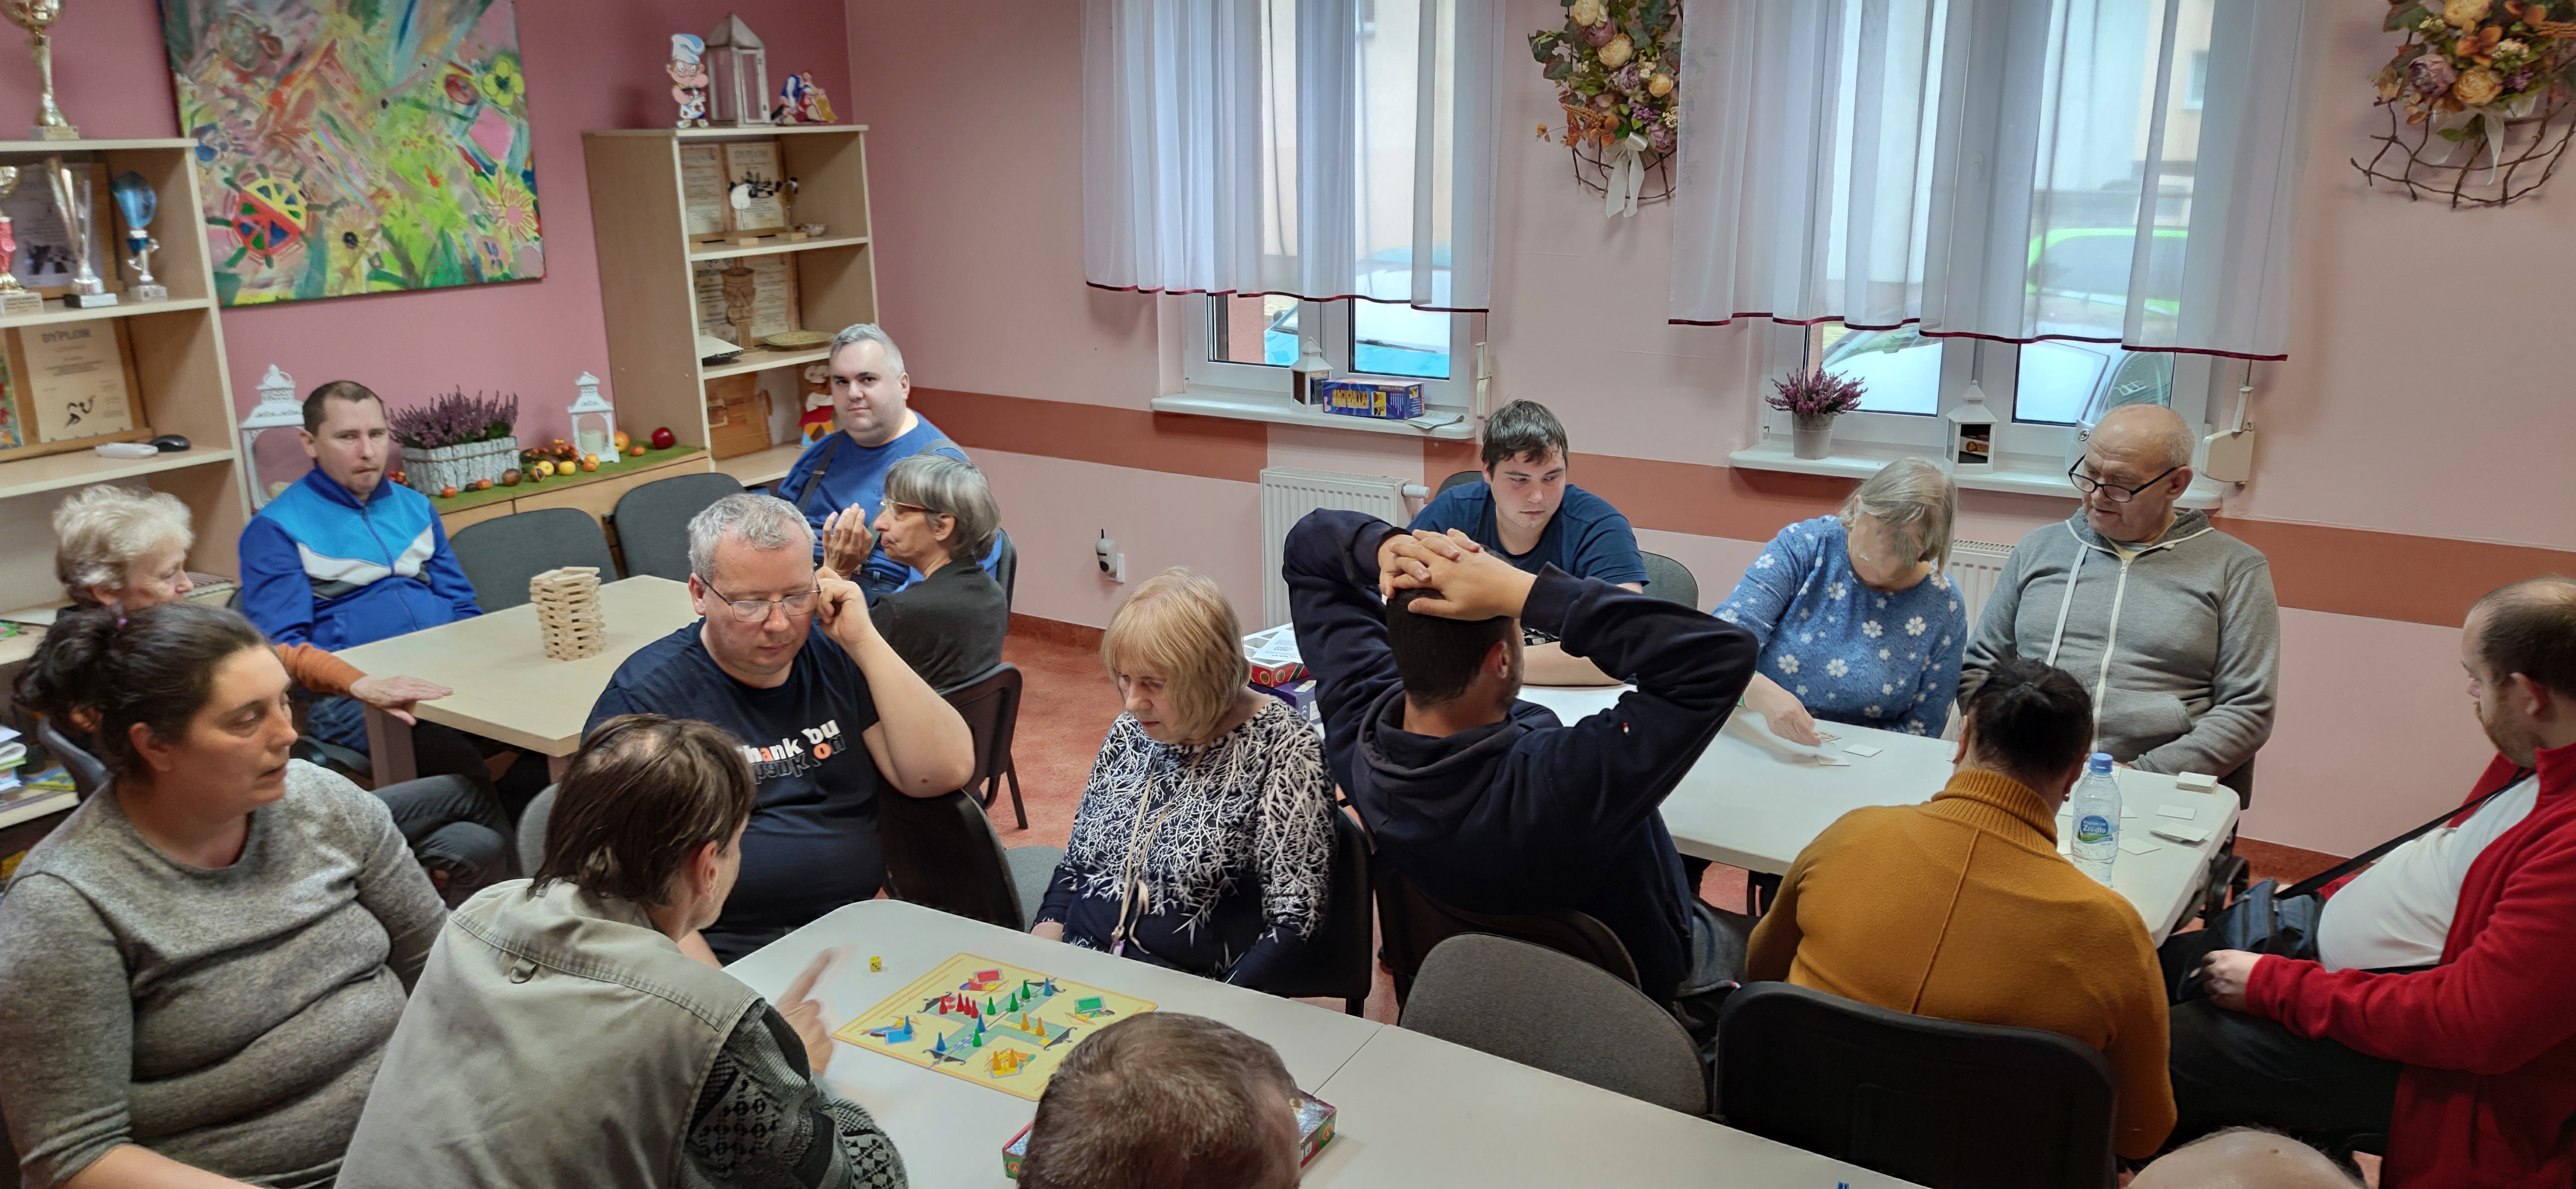 Grupa osób przy stołach gra w różne gry.